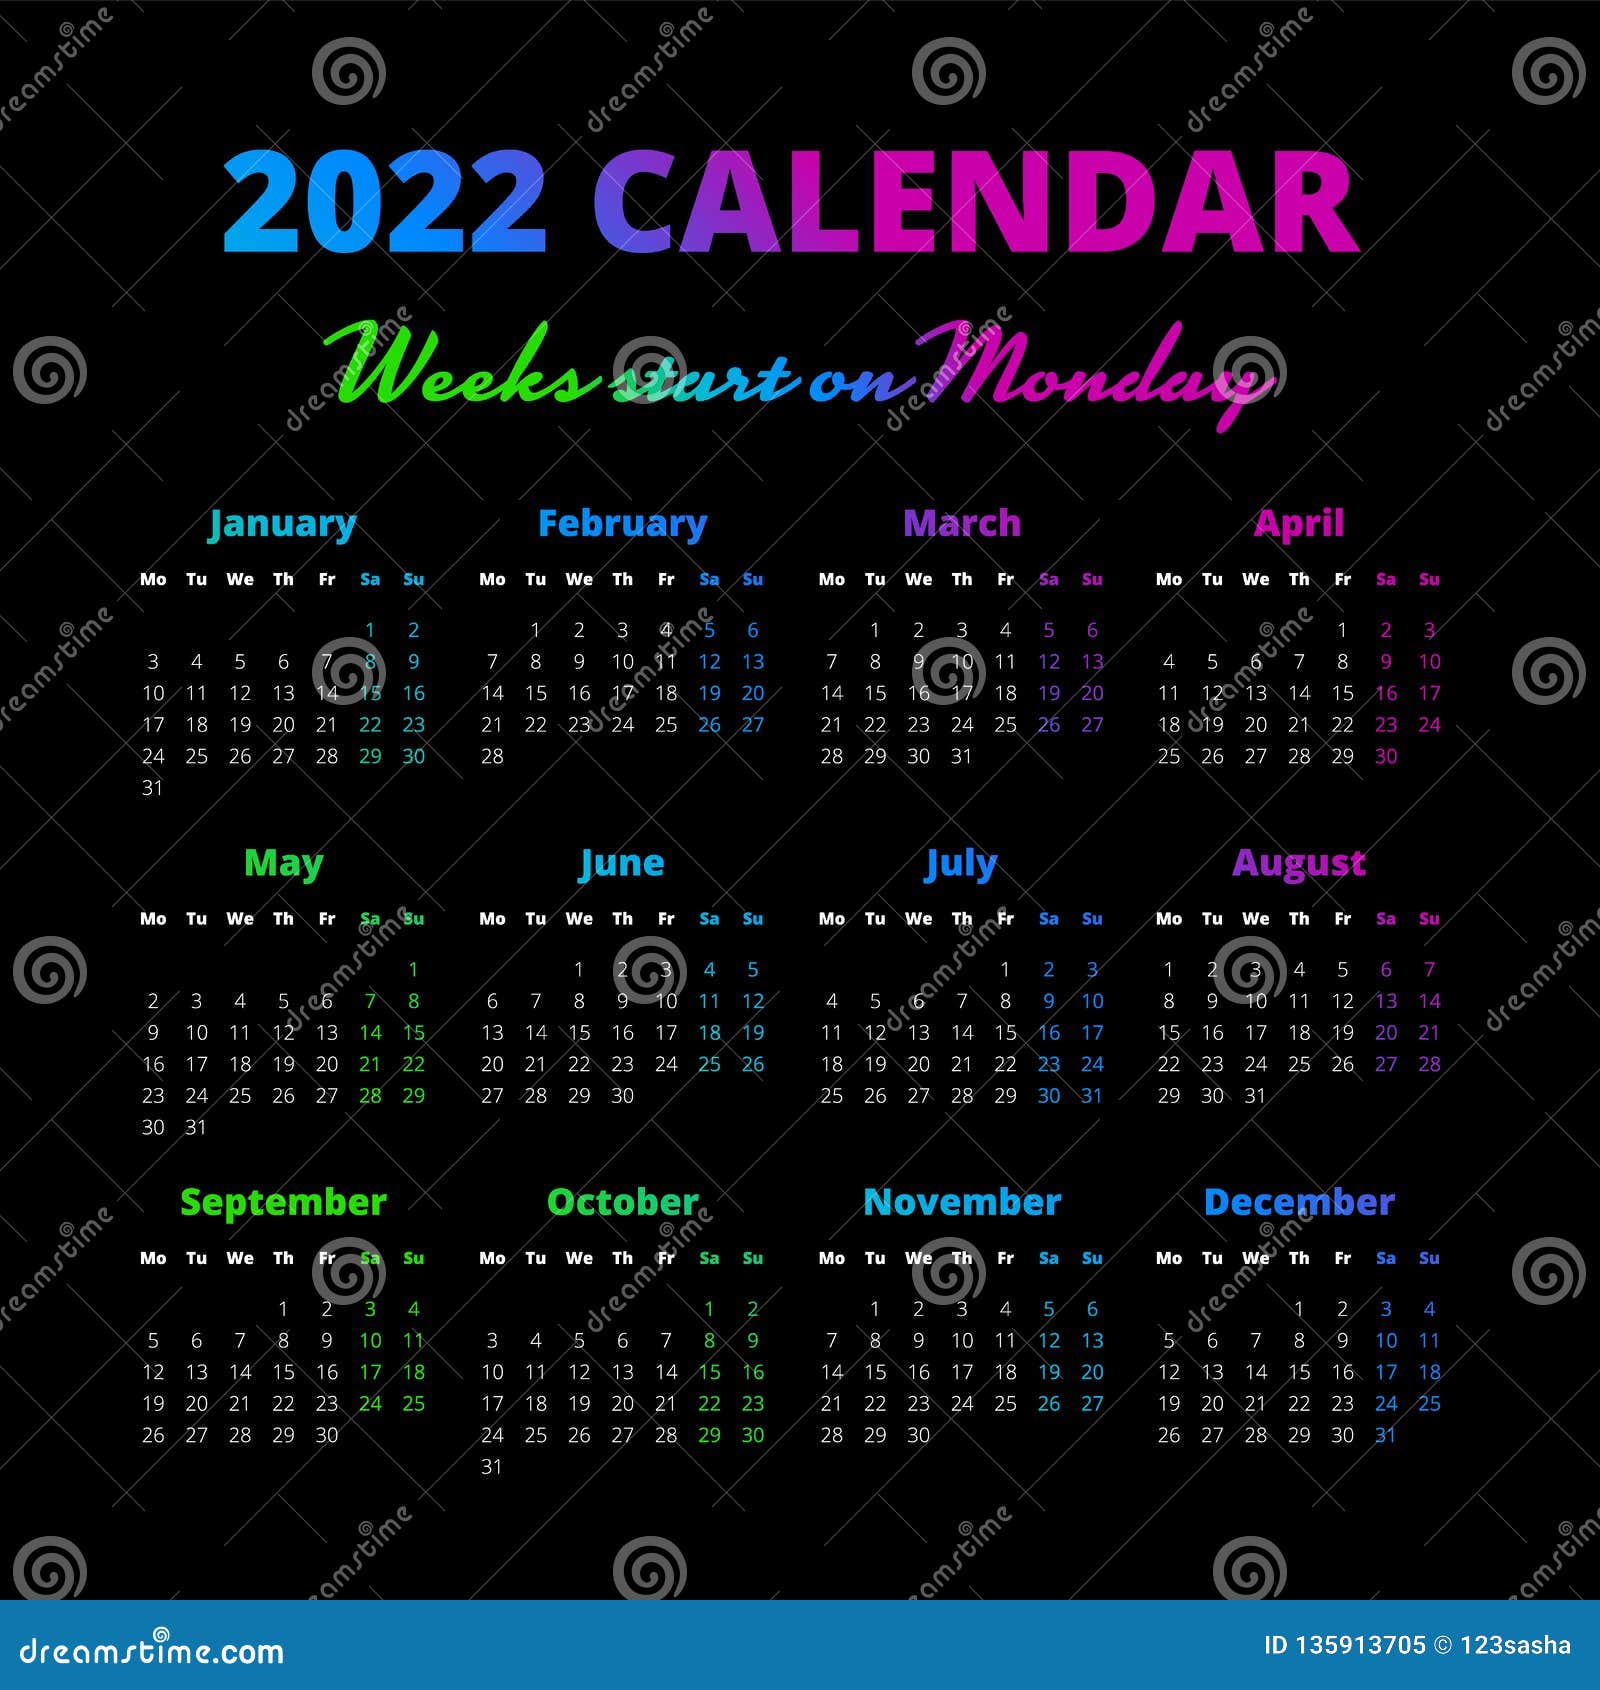 Calendar With Week Numbers 2020 2022